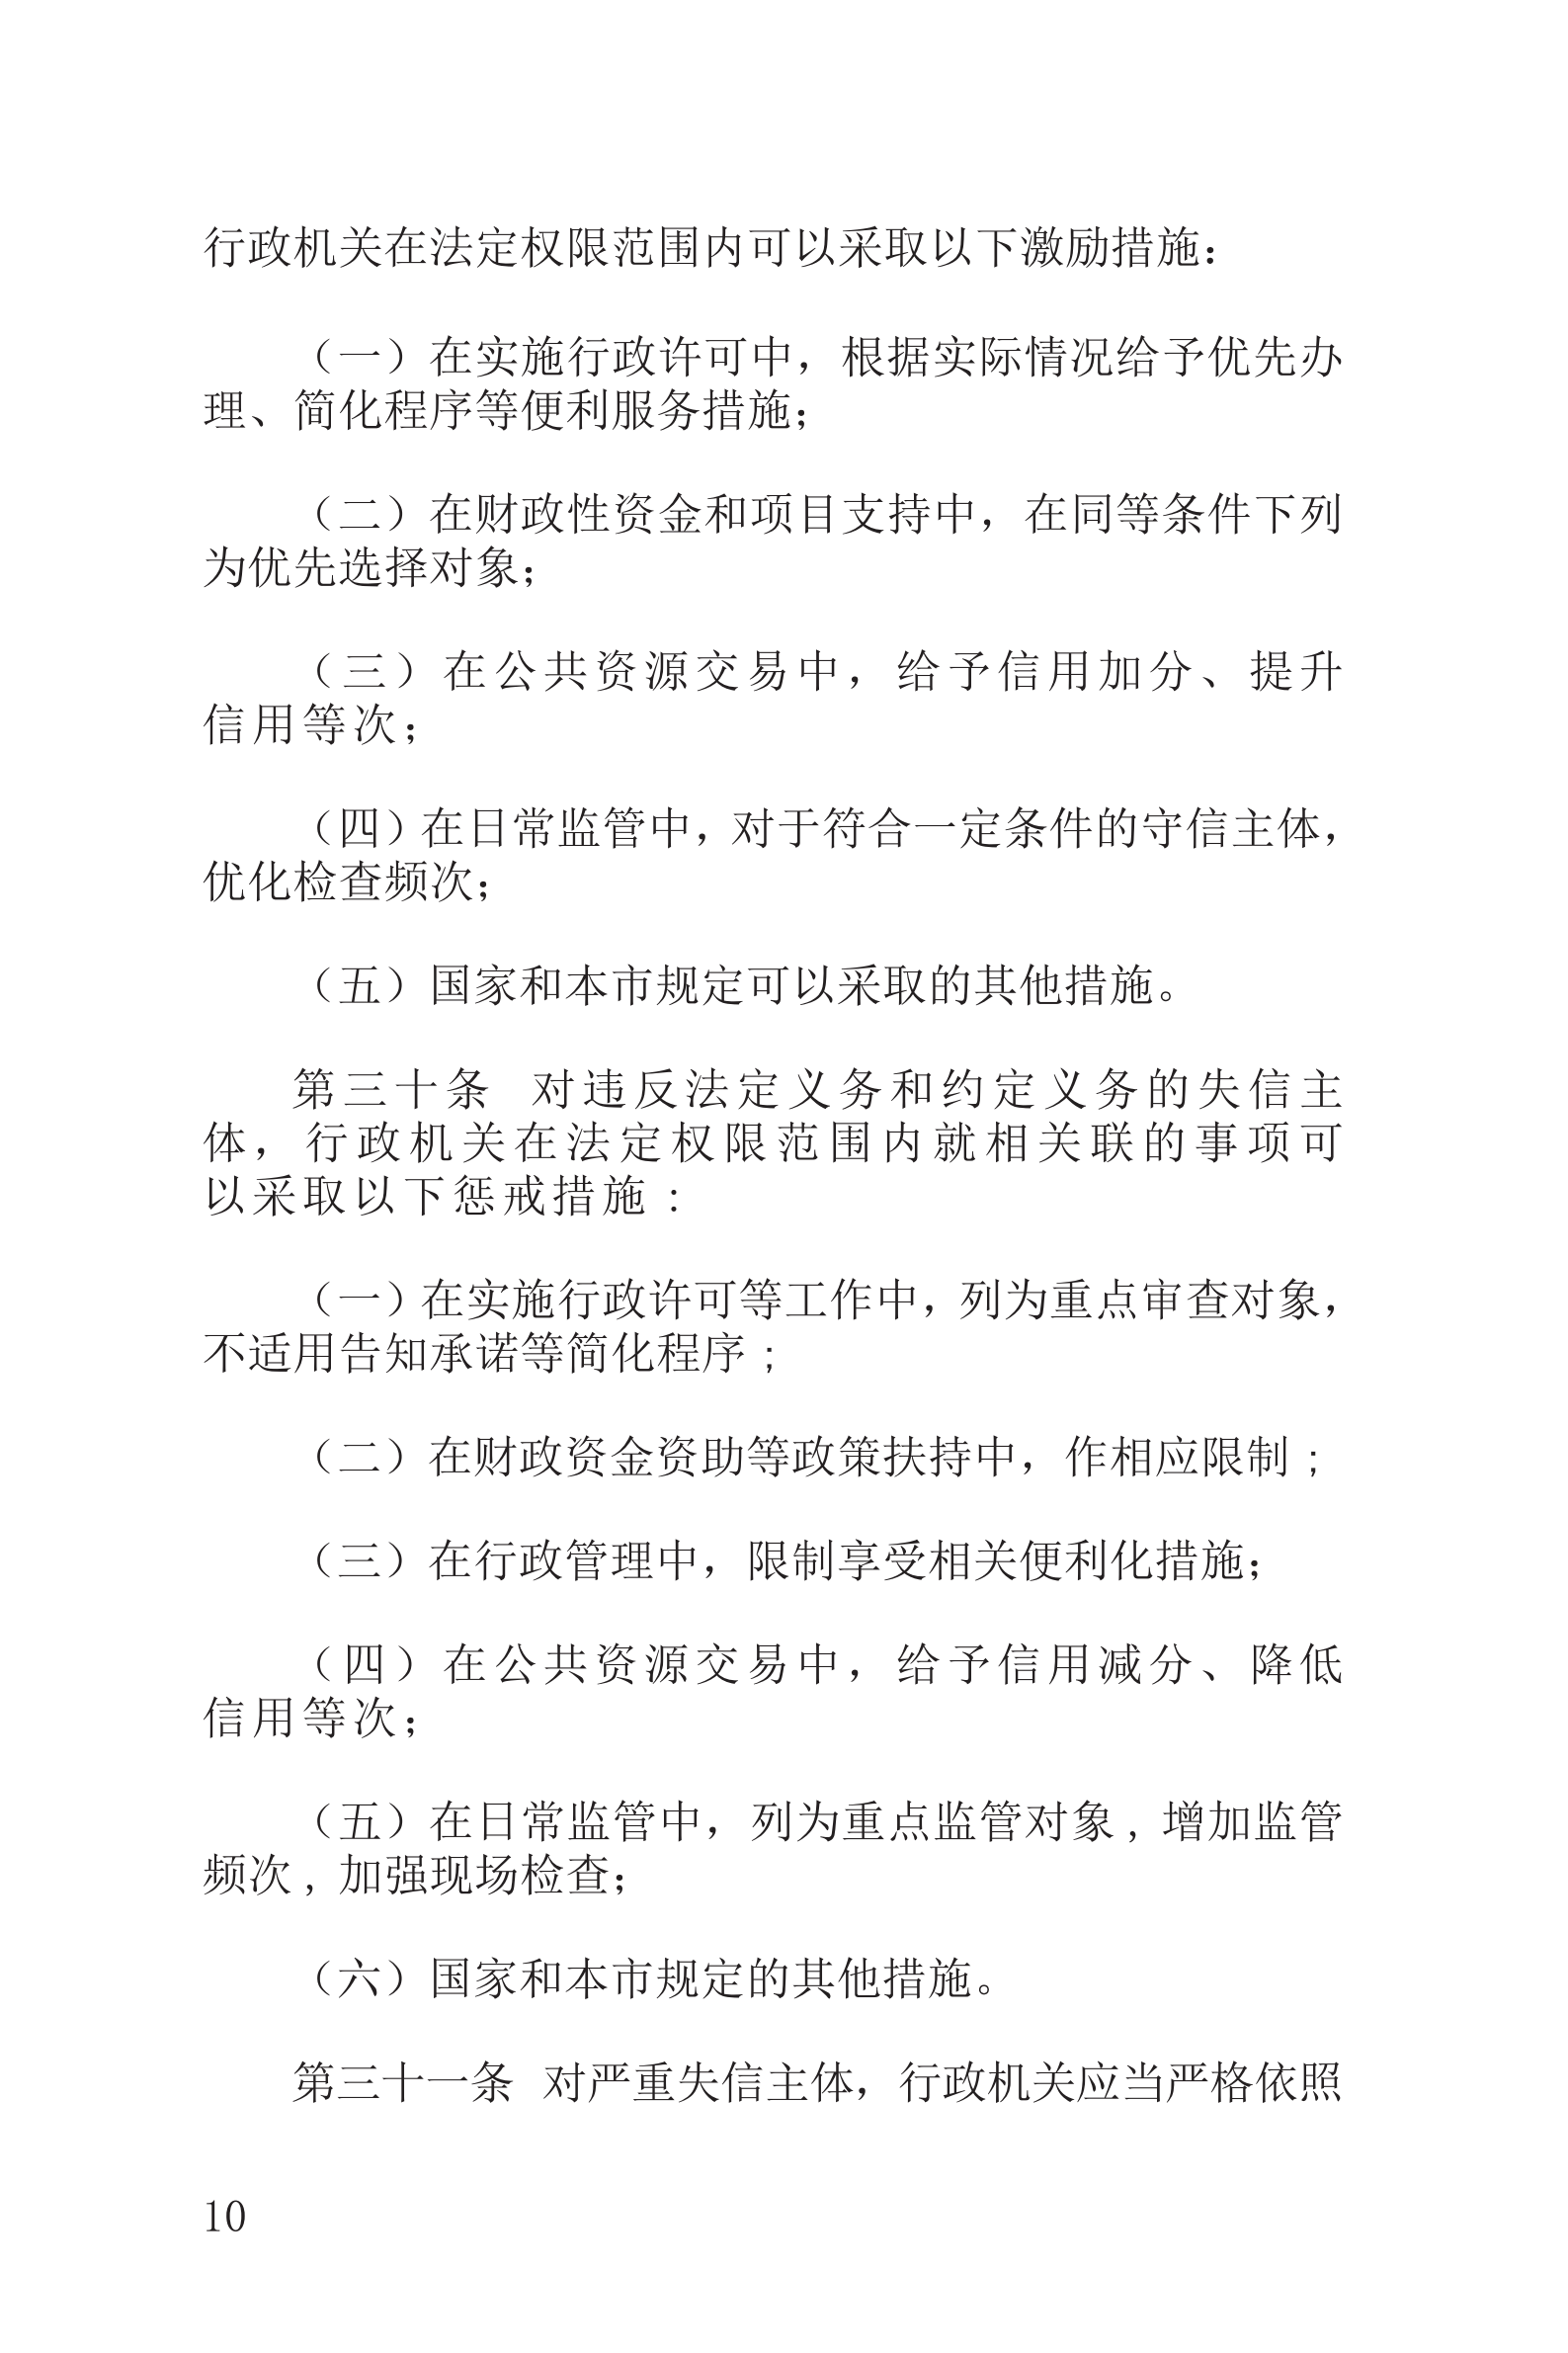 上海市社会信用条例_11.png